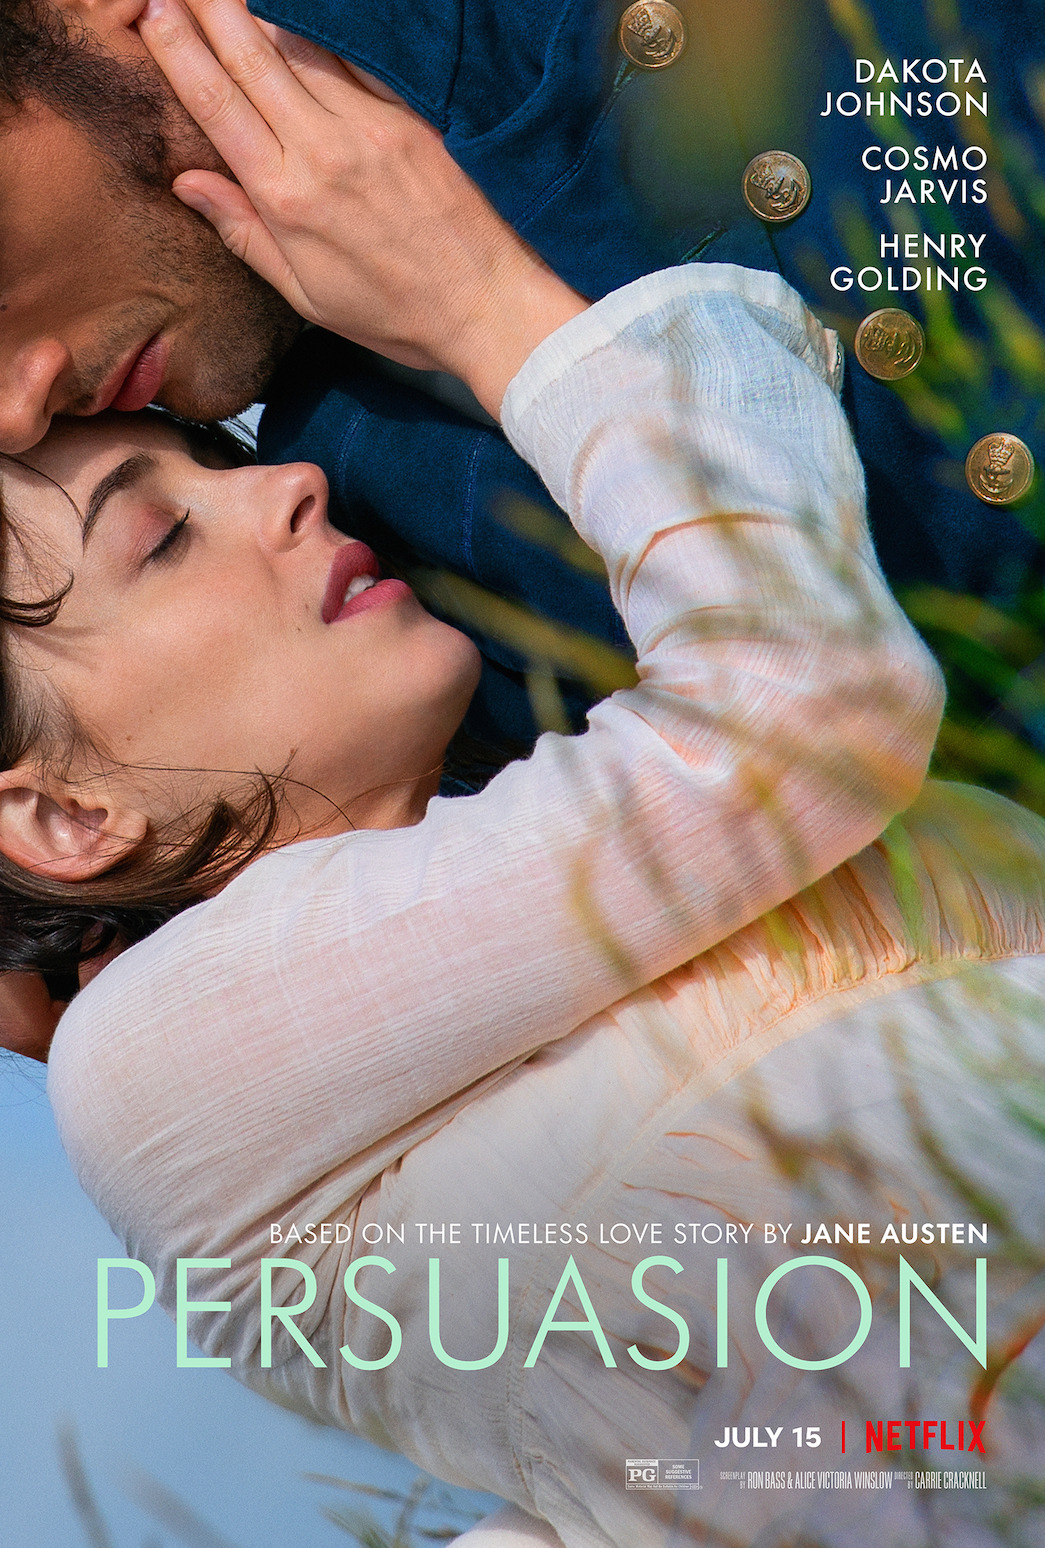 Dakota Johnson protagoniza ‘Persuasion’, película de Netflix basada en una novela de Jane Austen